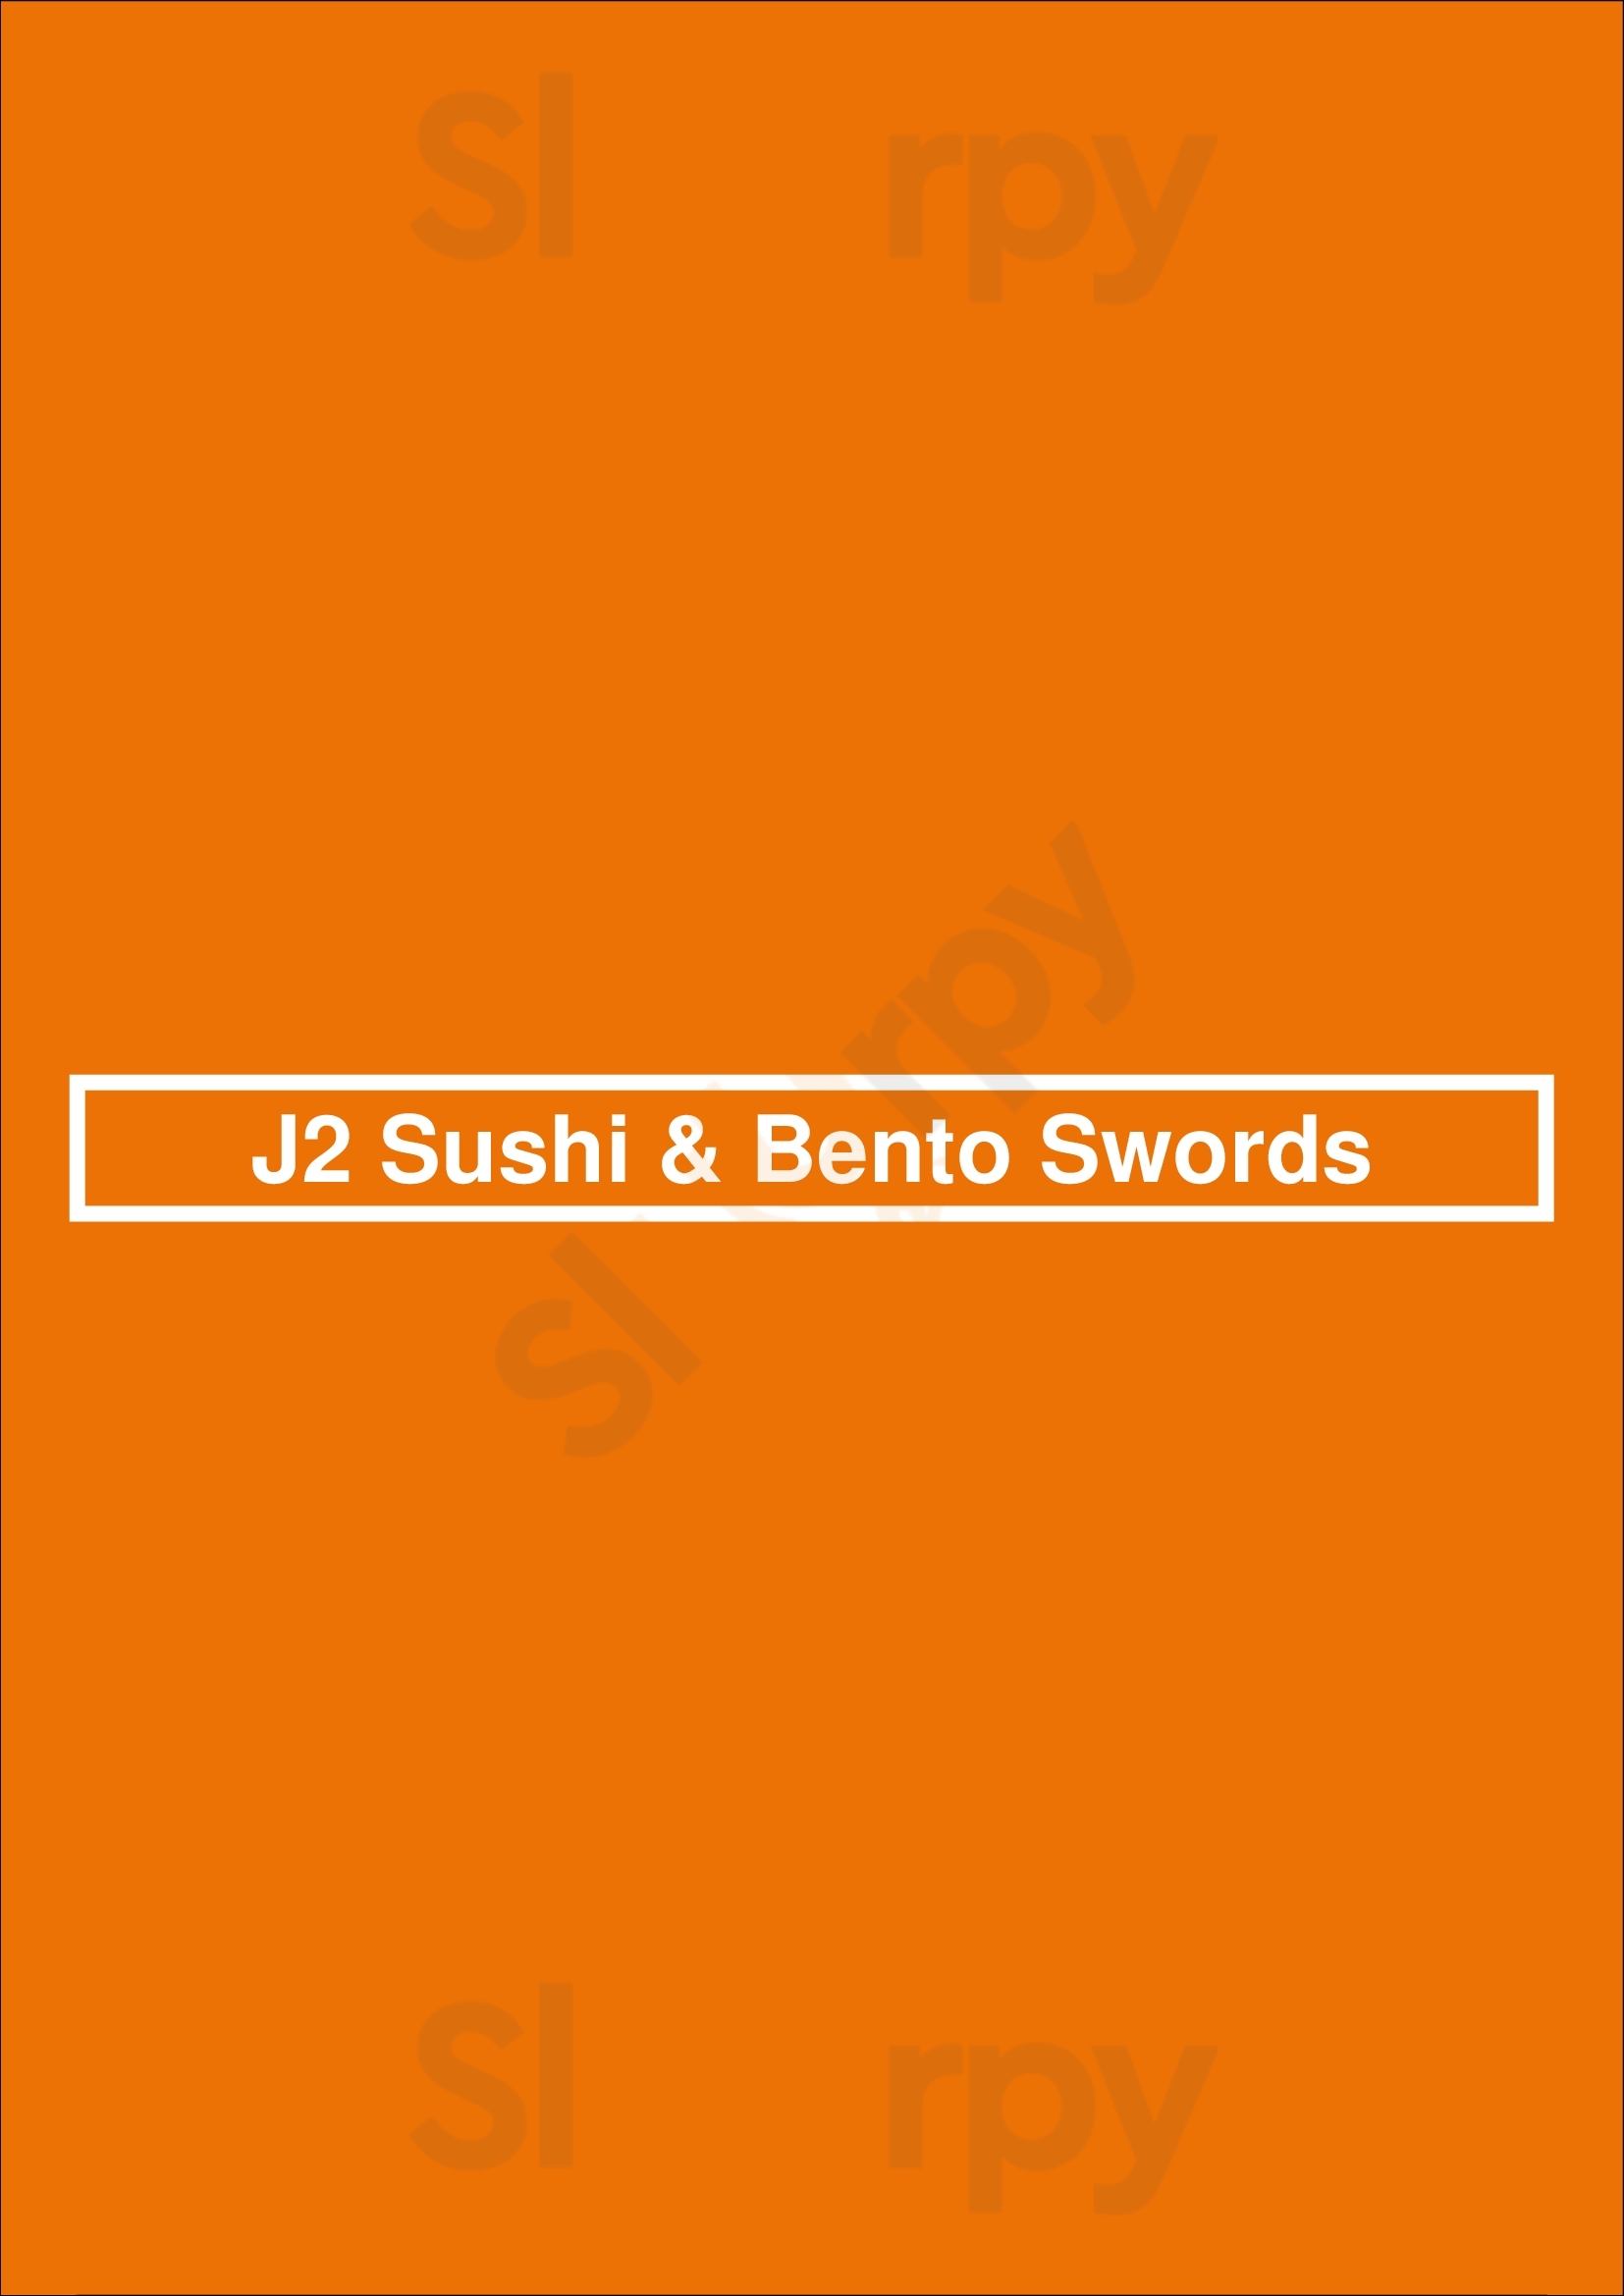 J2 Sushi & Bento Swords Dublin Menu - 1